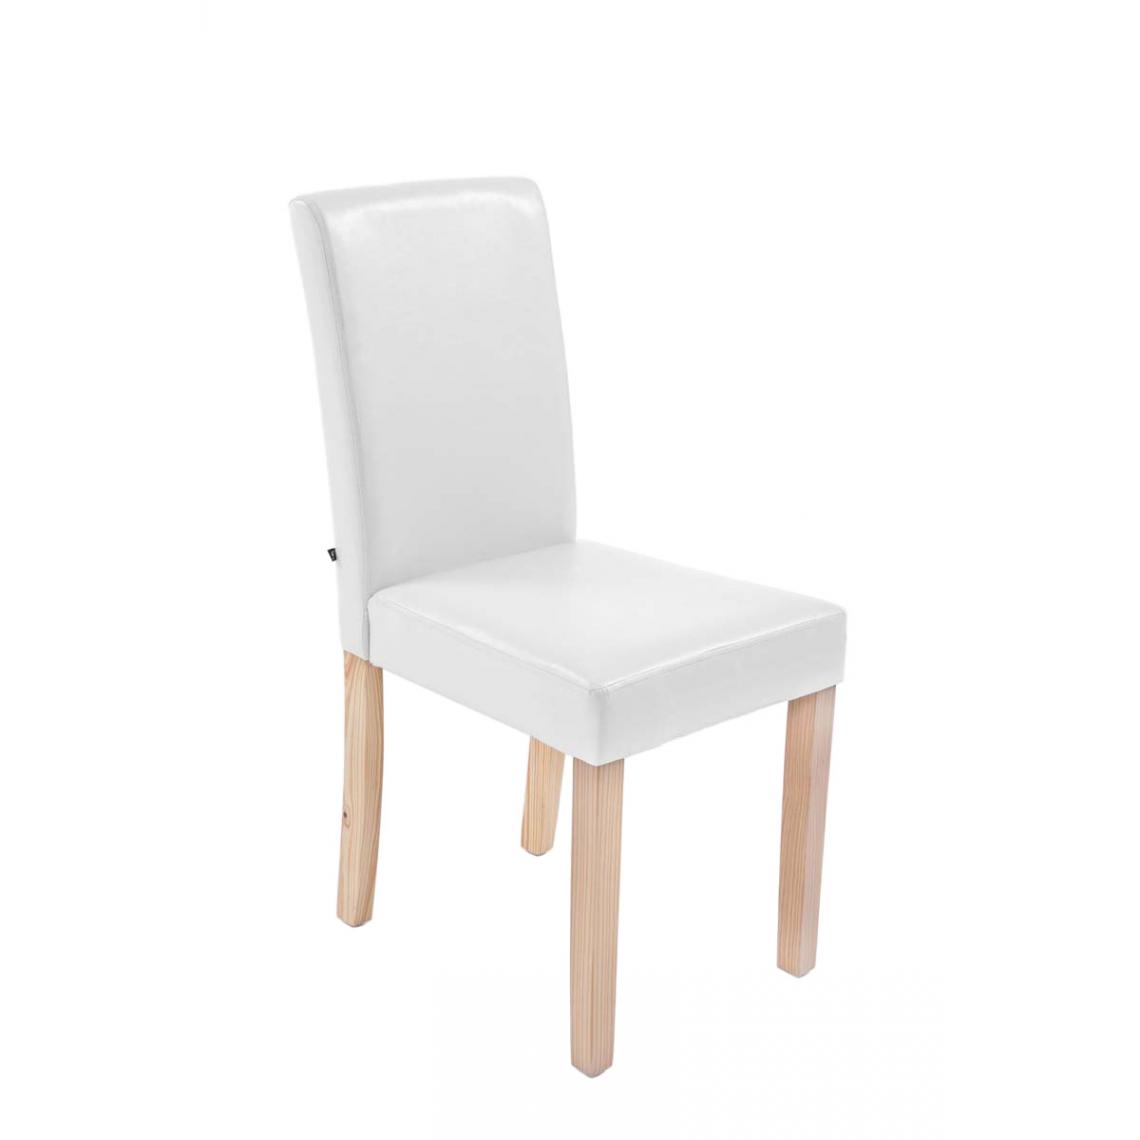 Icaverne - Admirable Chaise de salle à manger famille Rabat natura couleur blanc - Chaises